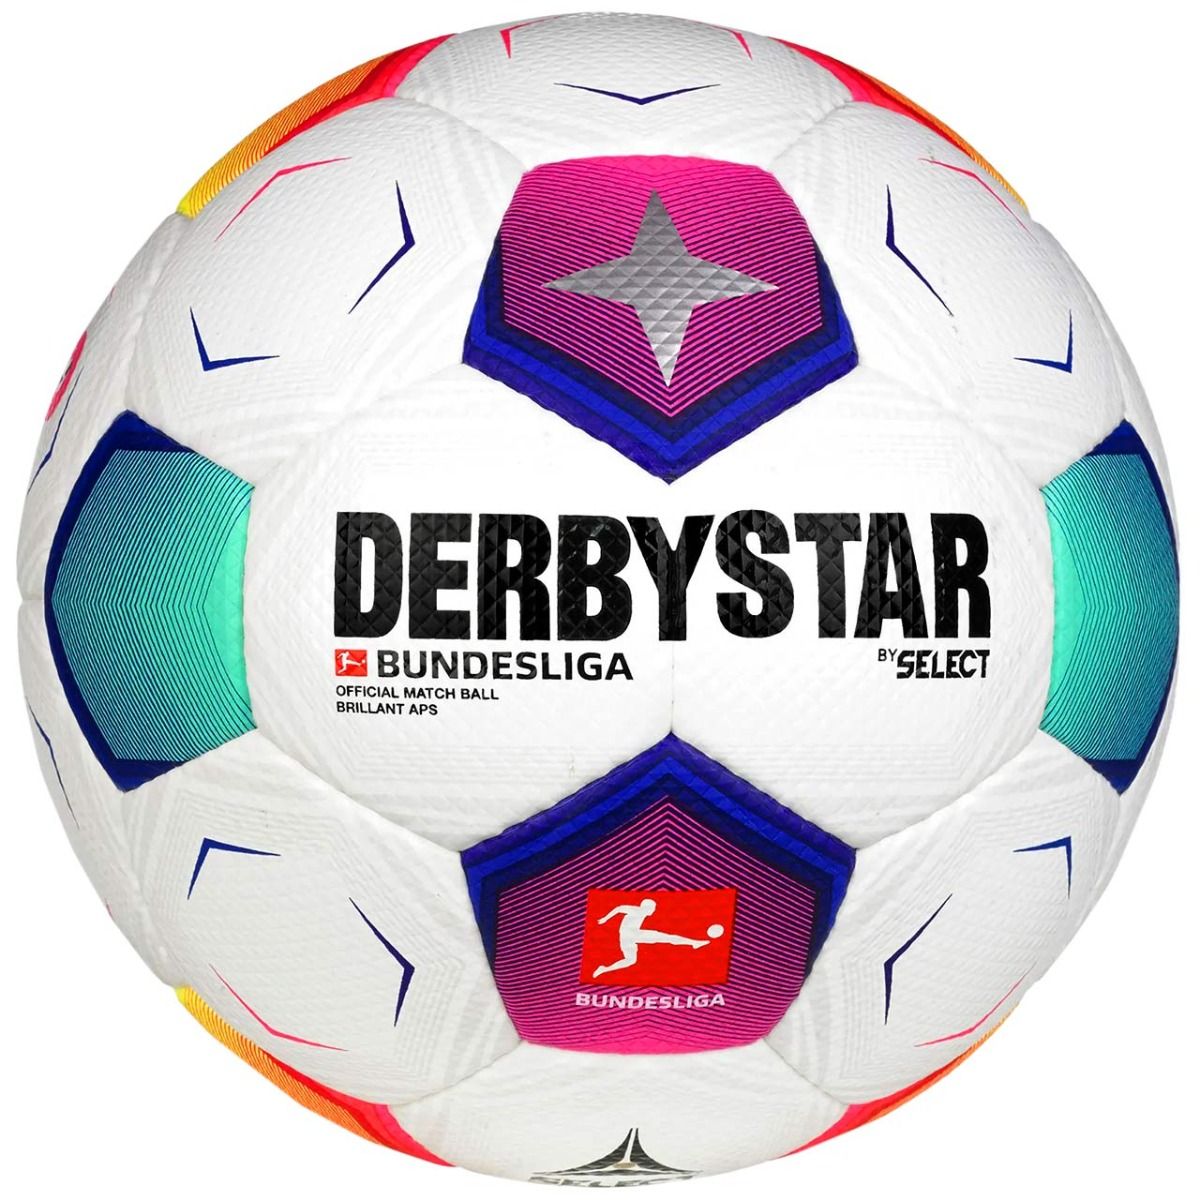 Select Fußball Derbystar Brillant FIFA v23 1016096